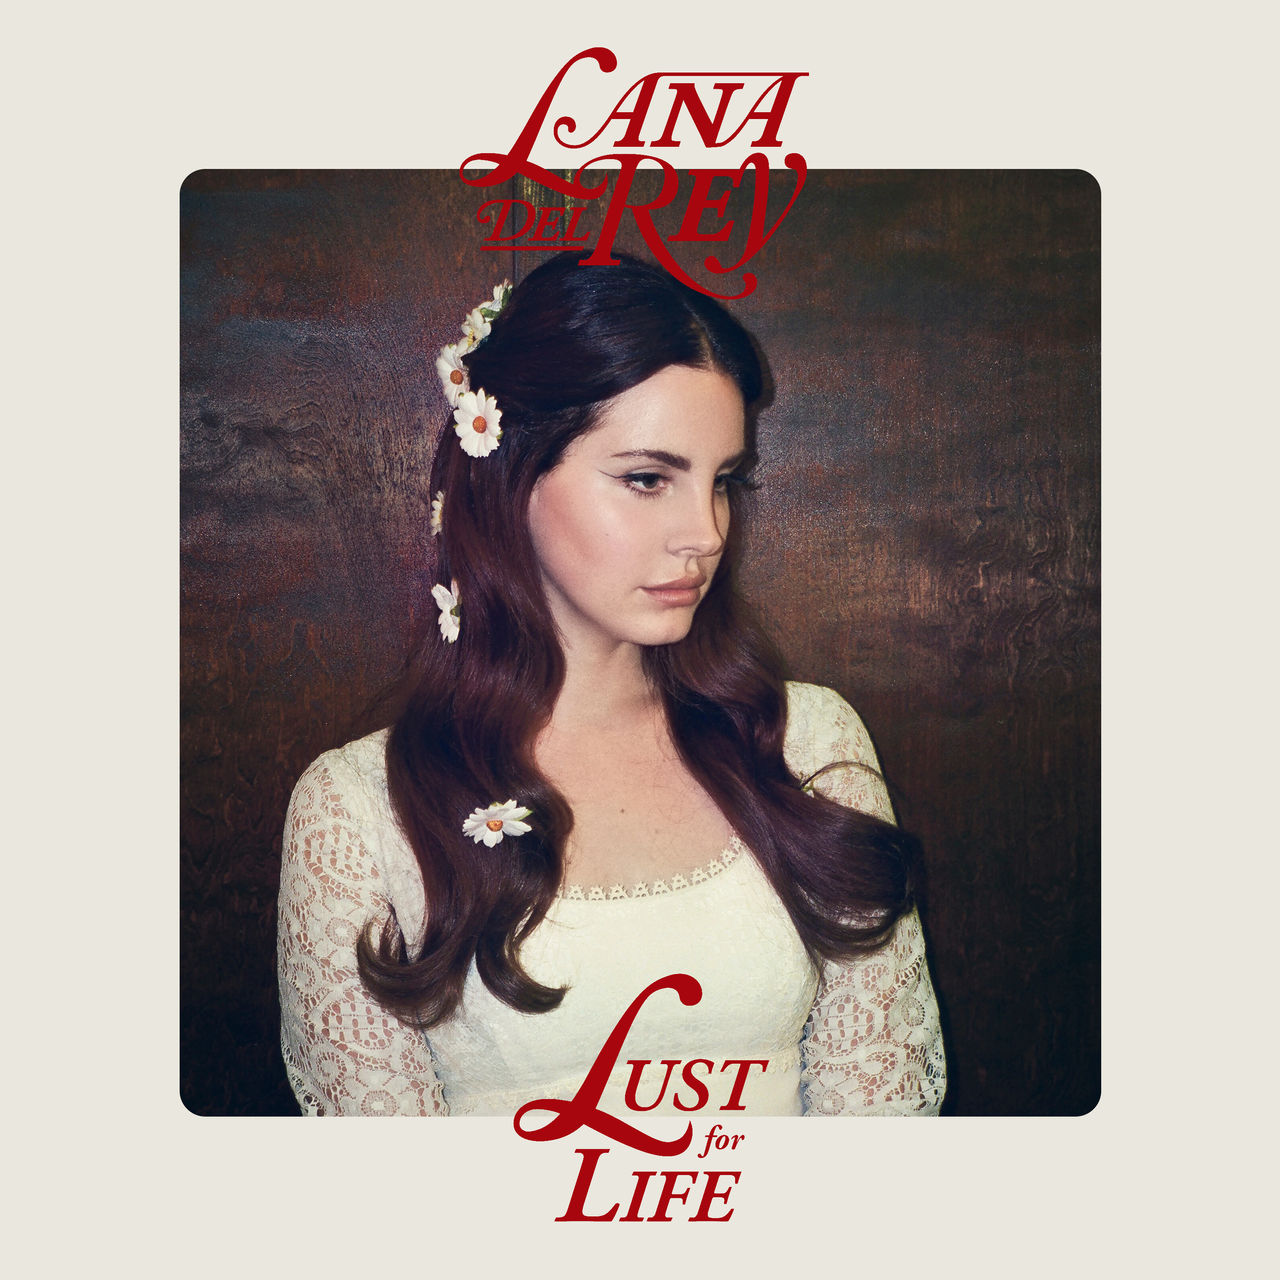 Lust for life lana. Lana del Rey "Lust for Life". Альбомы Ланы дель Рей Lust for Life.